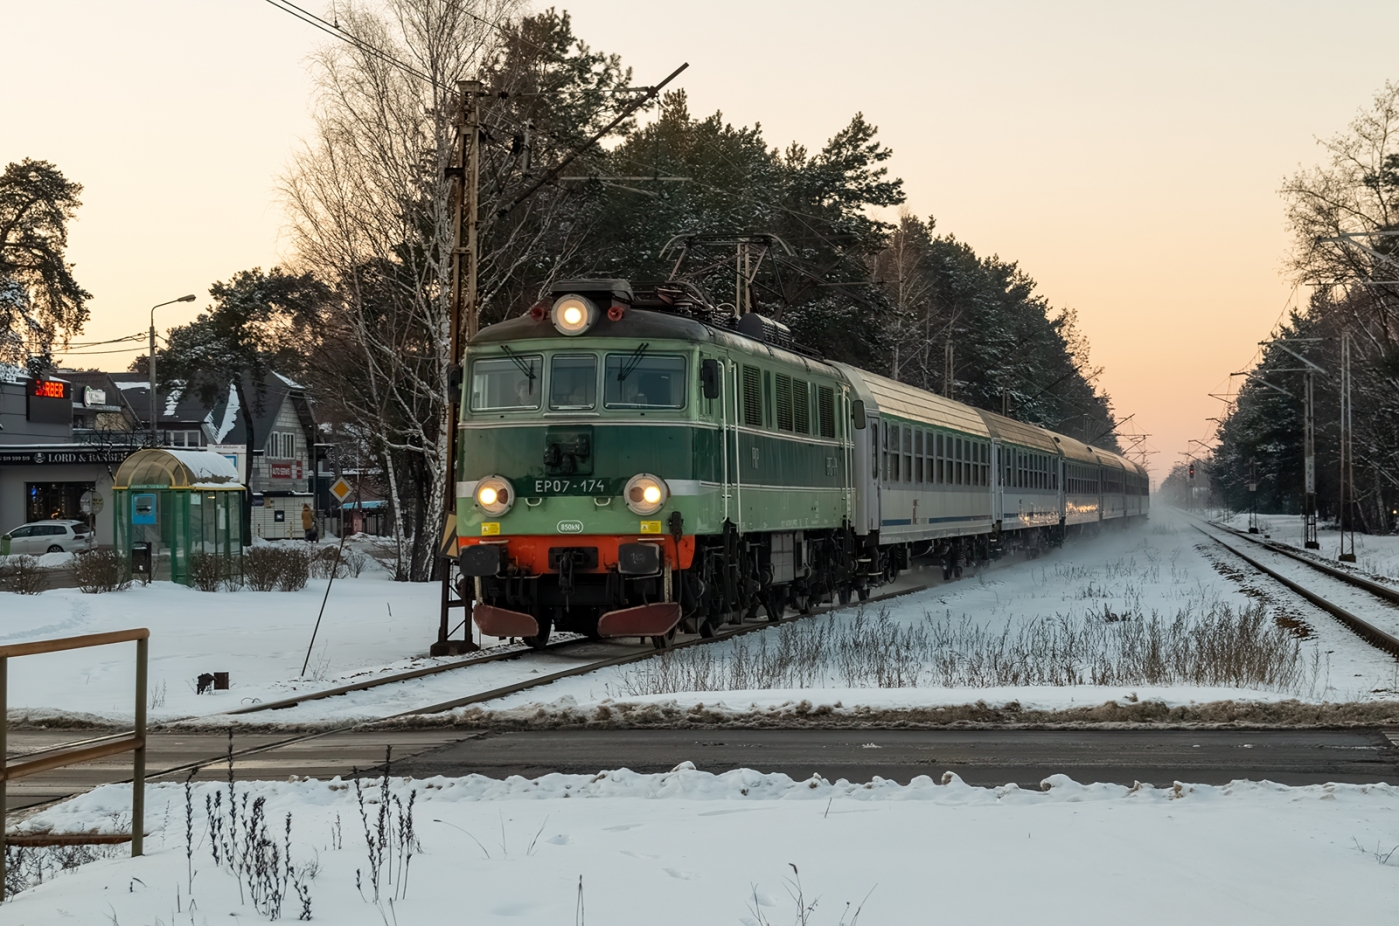 EP07-174
EP07-174 z pociągiem "ZAMOYSKI" zbliża się do przejazdu kolejowego w Michalinie.
Słowa kluczowe: EP07 EP07-174 Michalin